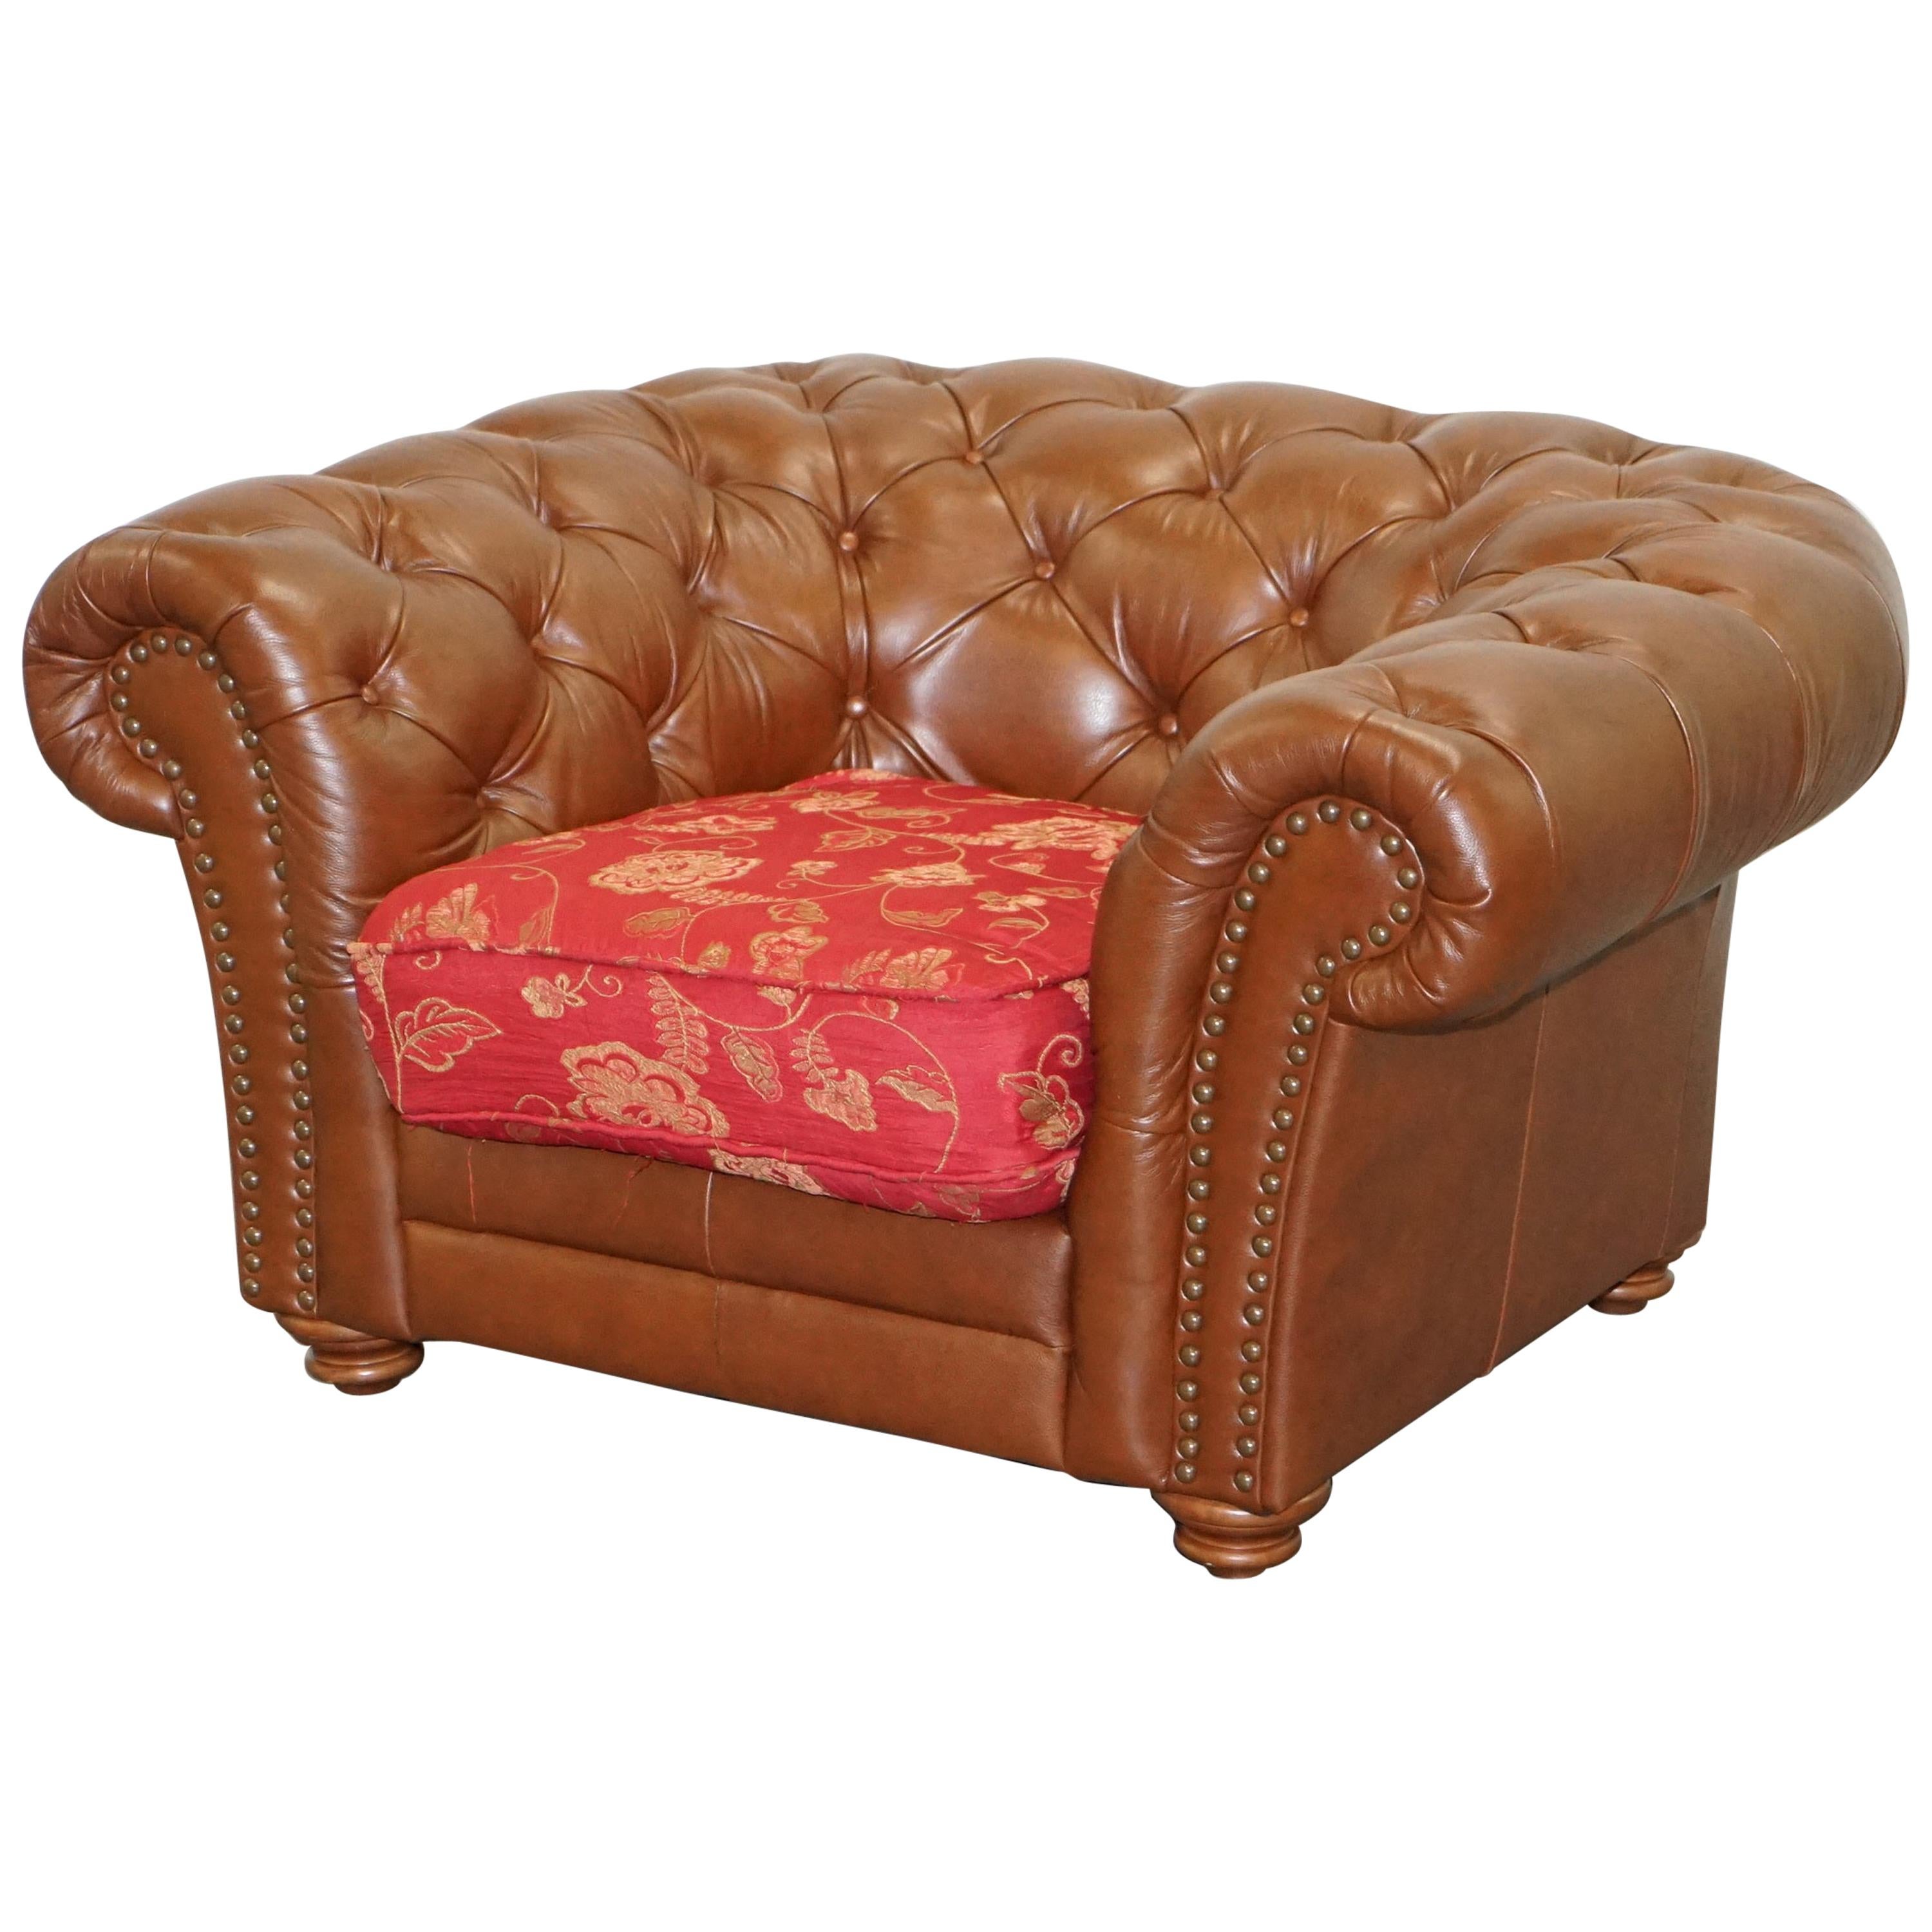 Tetrad Chesterfield-Sessel aus braunem Leder, hergestellt in England, Teil der Full Suite